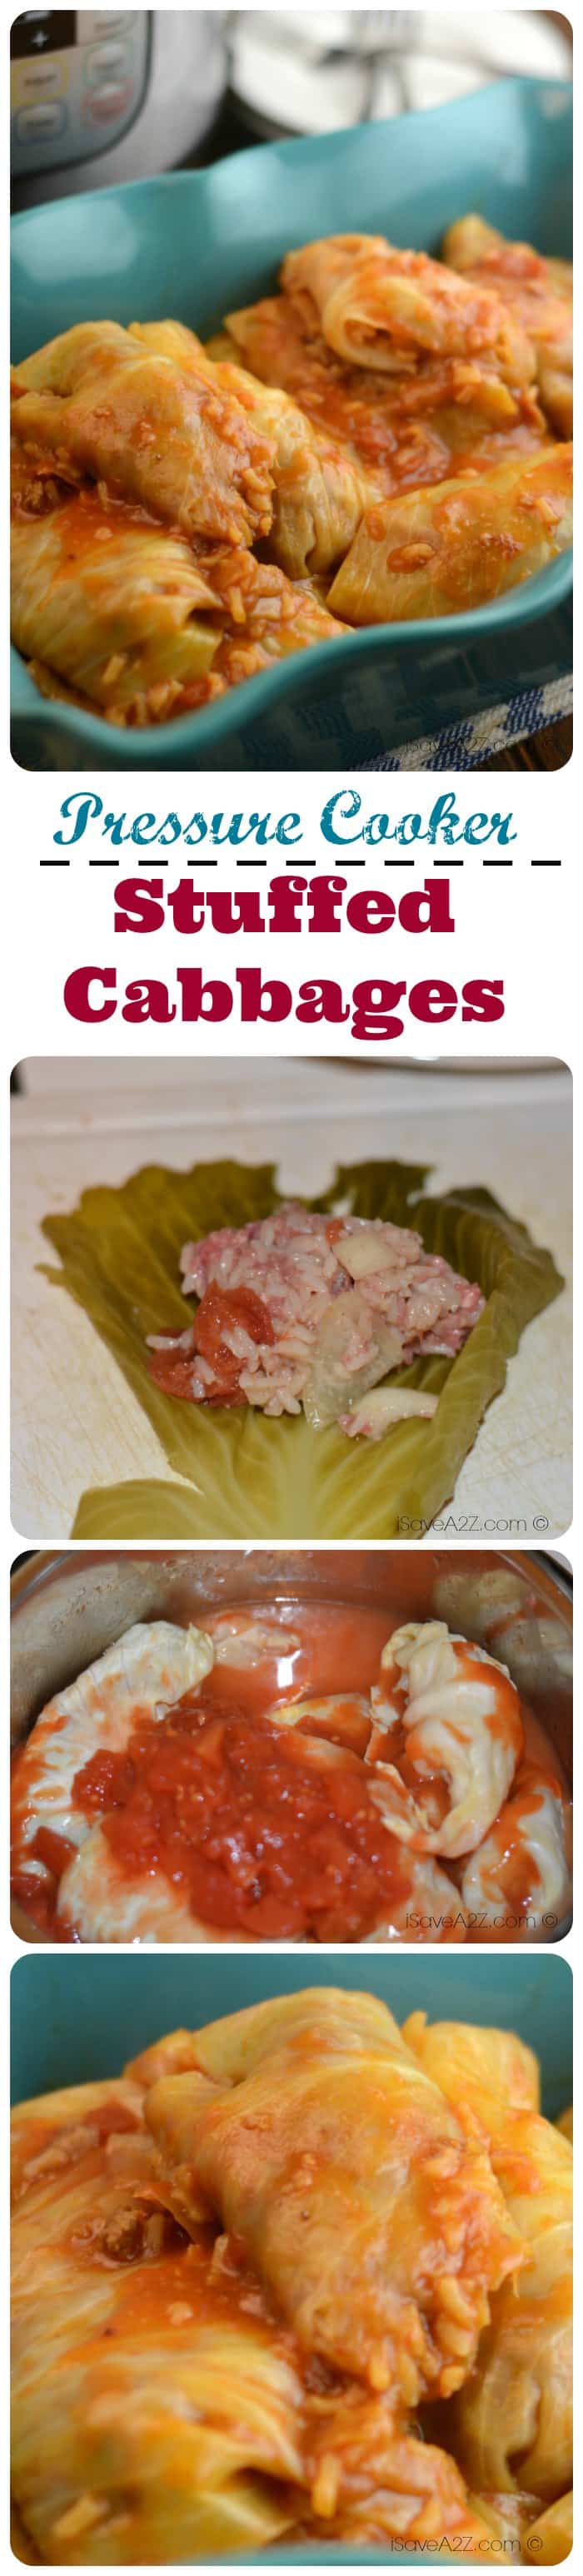 Pressure Cooker Stuffed Cabbage Rolls Recipe